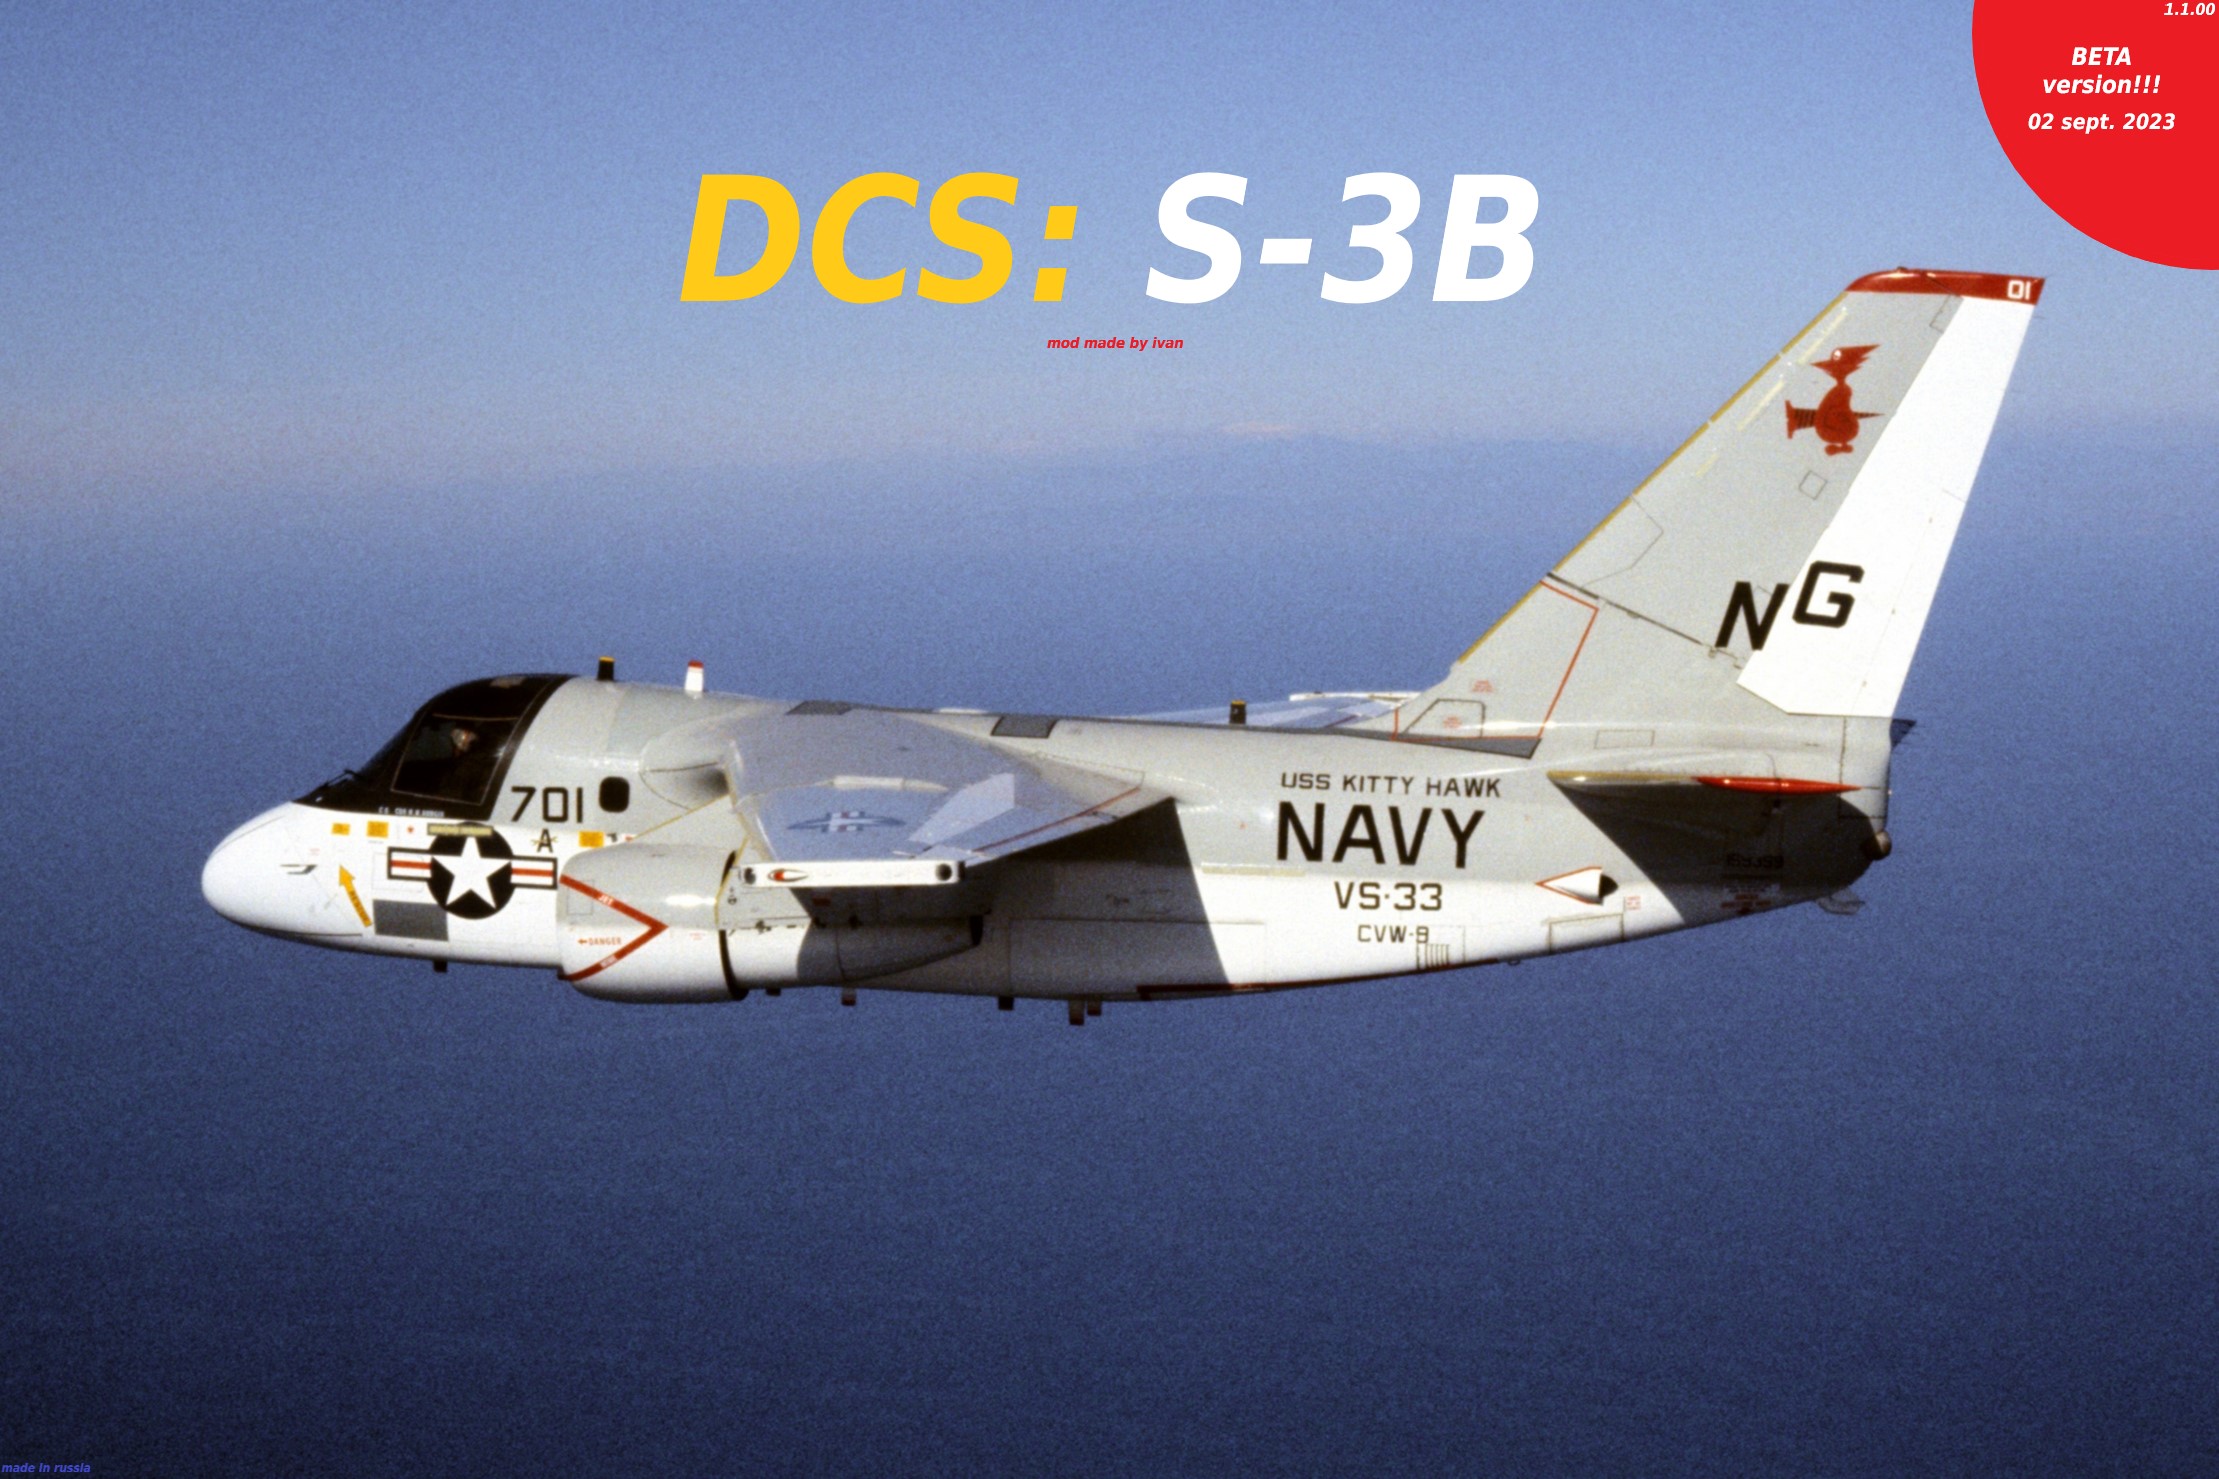 DCS: S-3B flyable mod BETA ver.